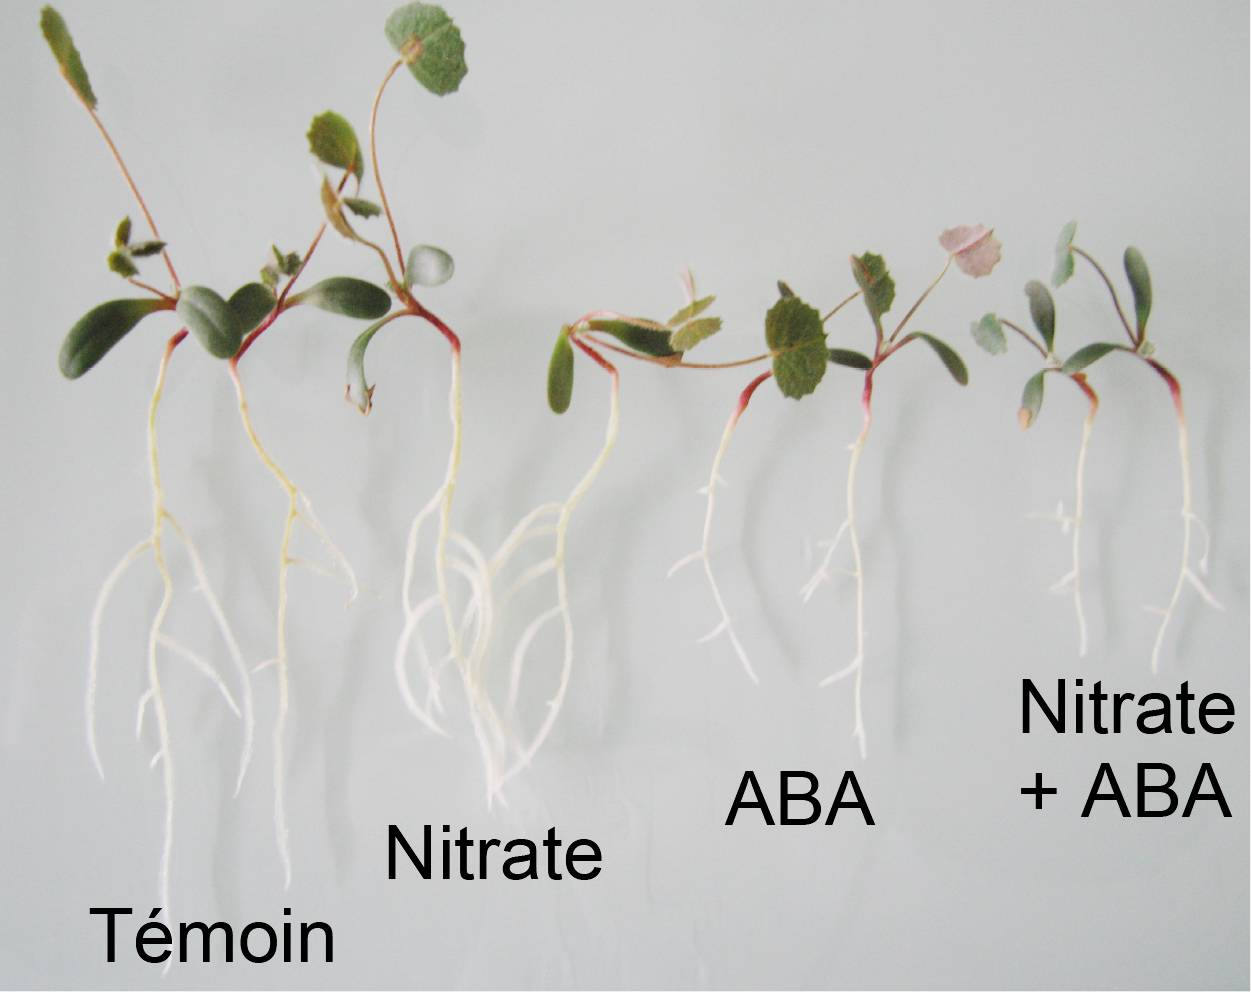 Croissance des racimes des plantes selon l'apport en nitrate